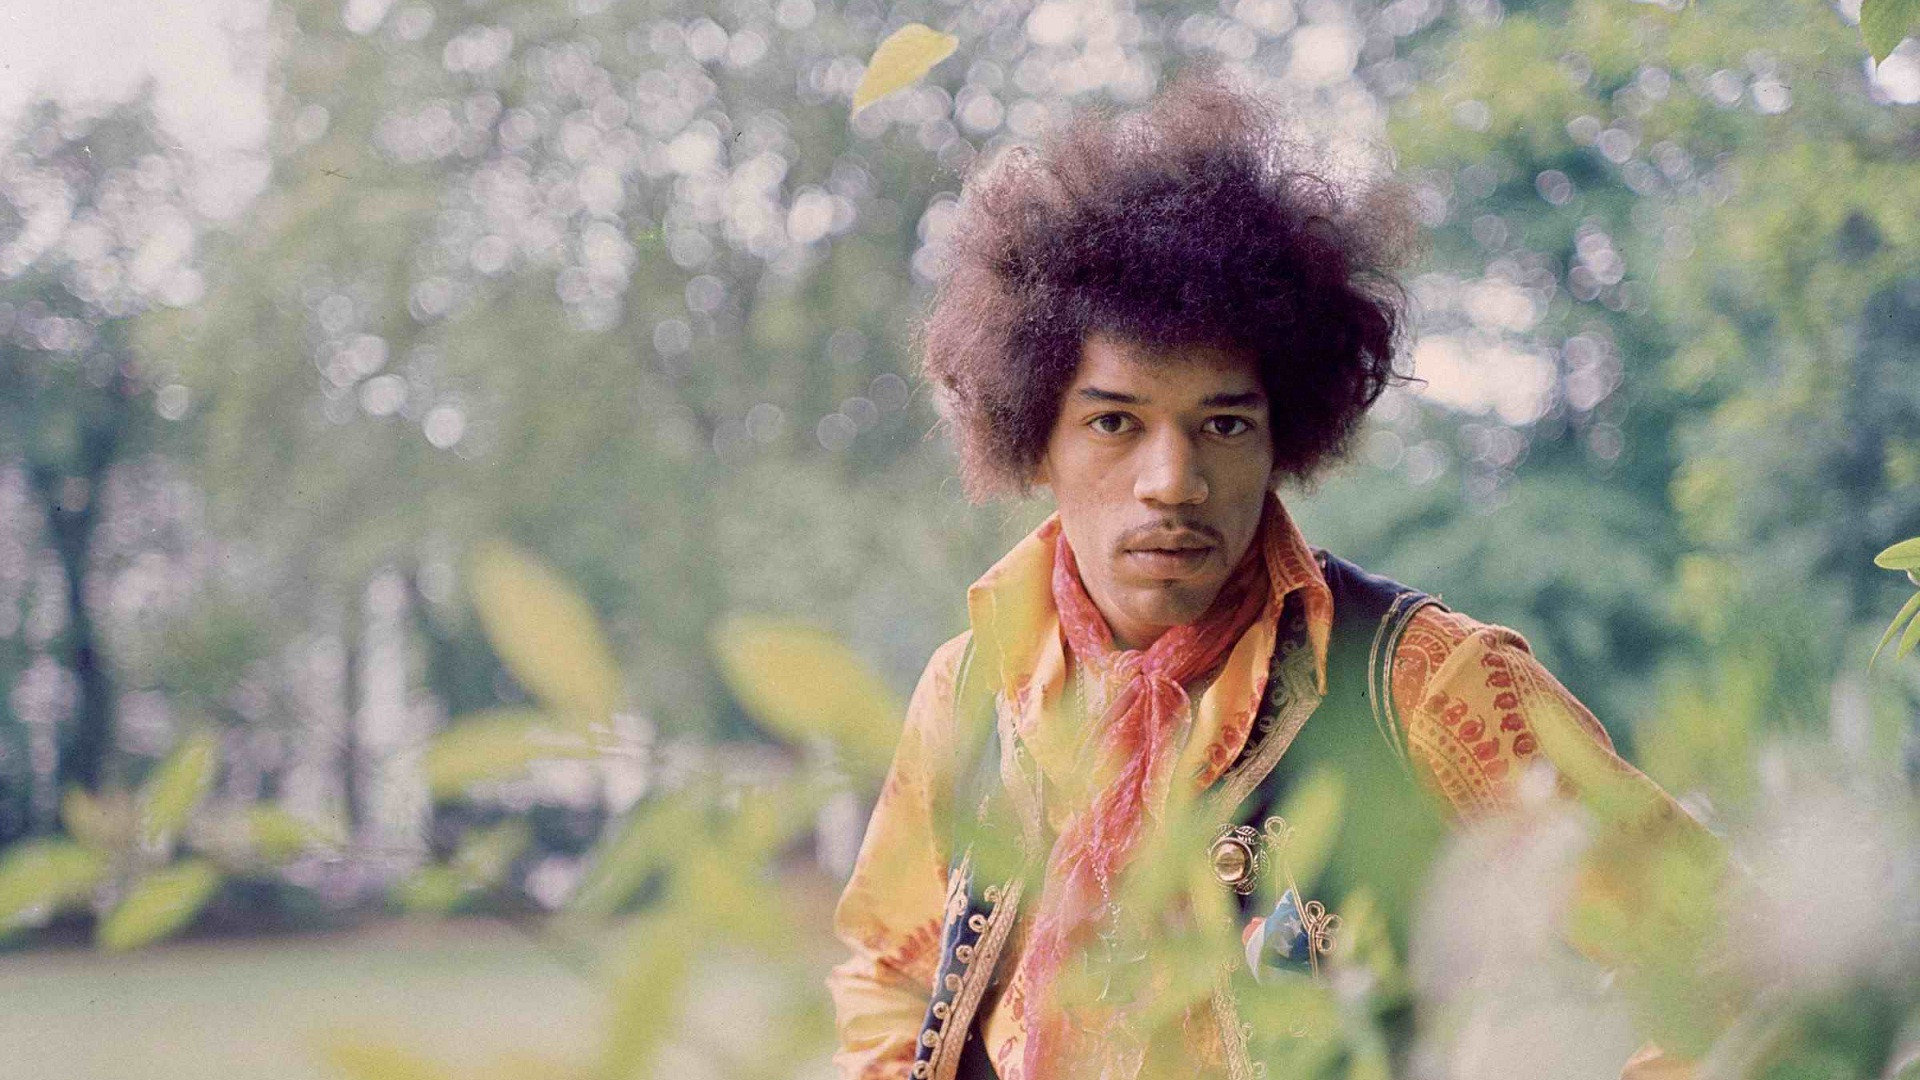 Jimi Hendrix (Celebs), Jimi Hendrix wallpapers, HD, Desktop backgrounds, 1920x1080 Full HD Desktop